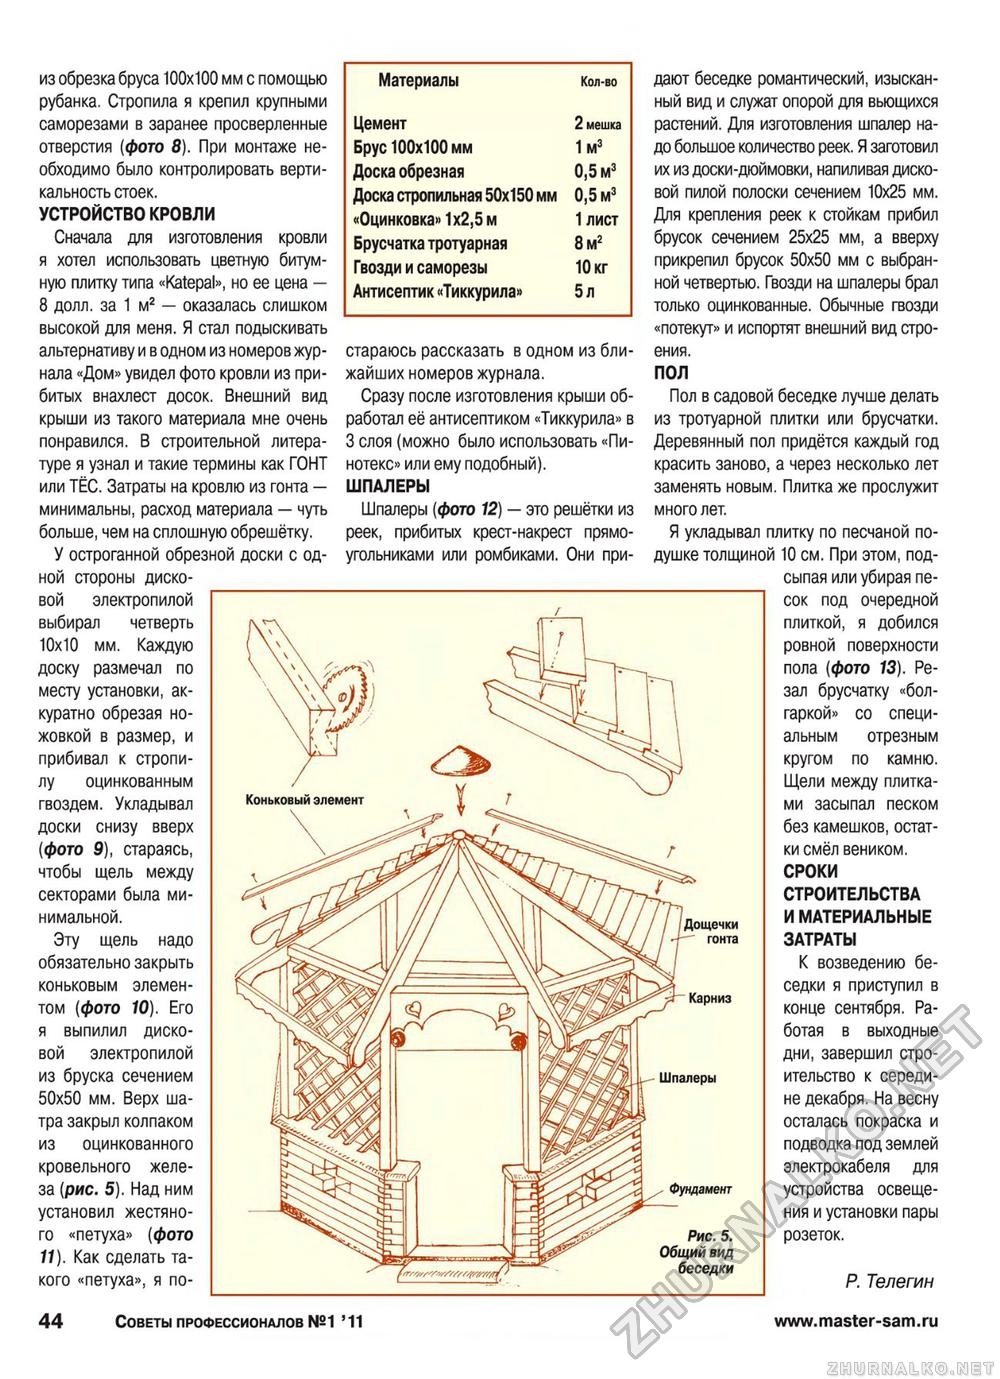 Советы профессионалов 2011-01, страница 44